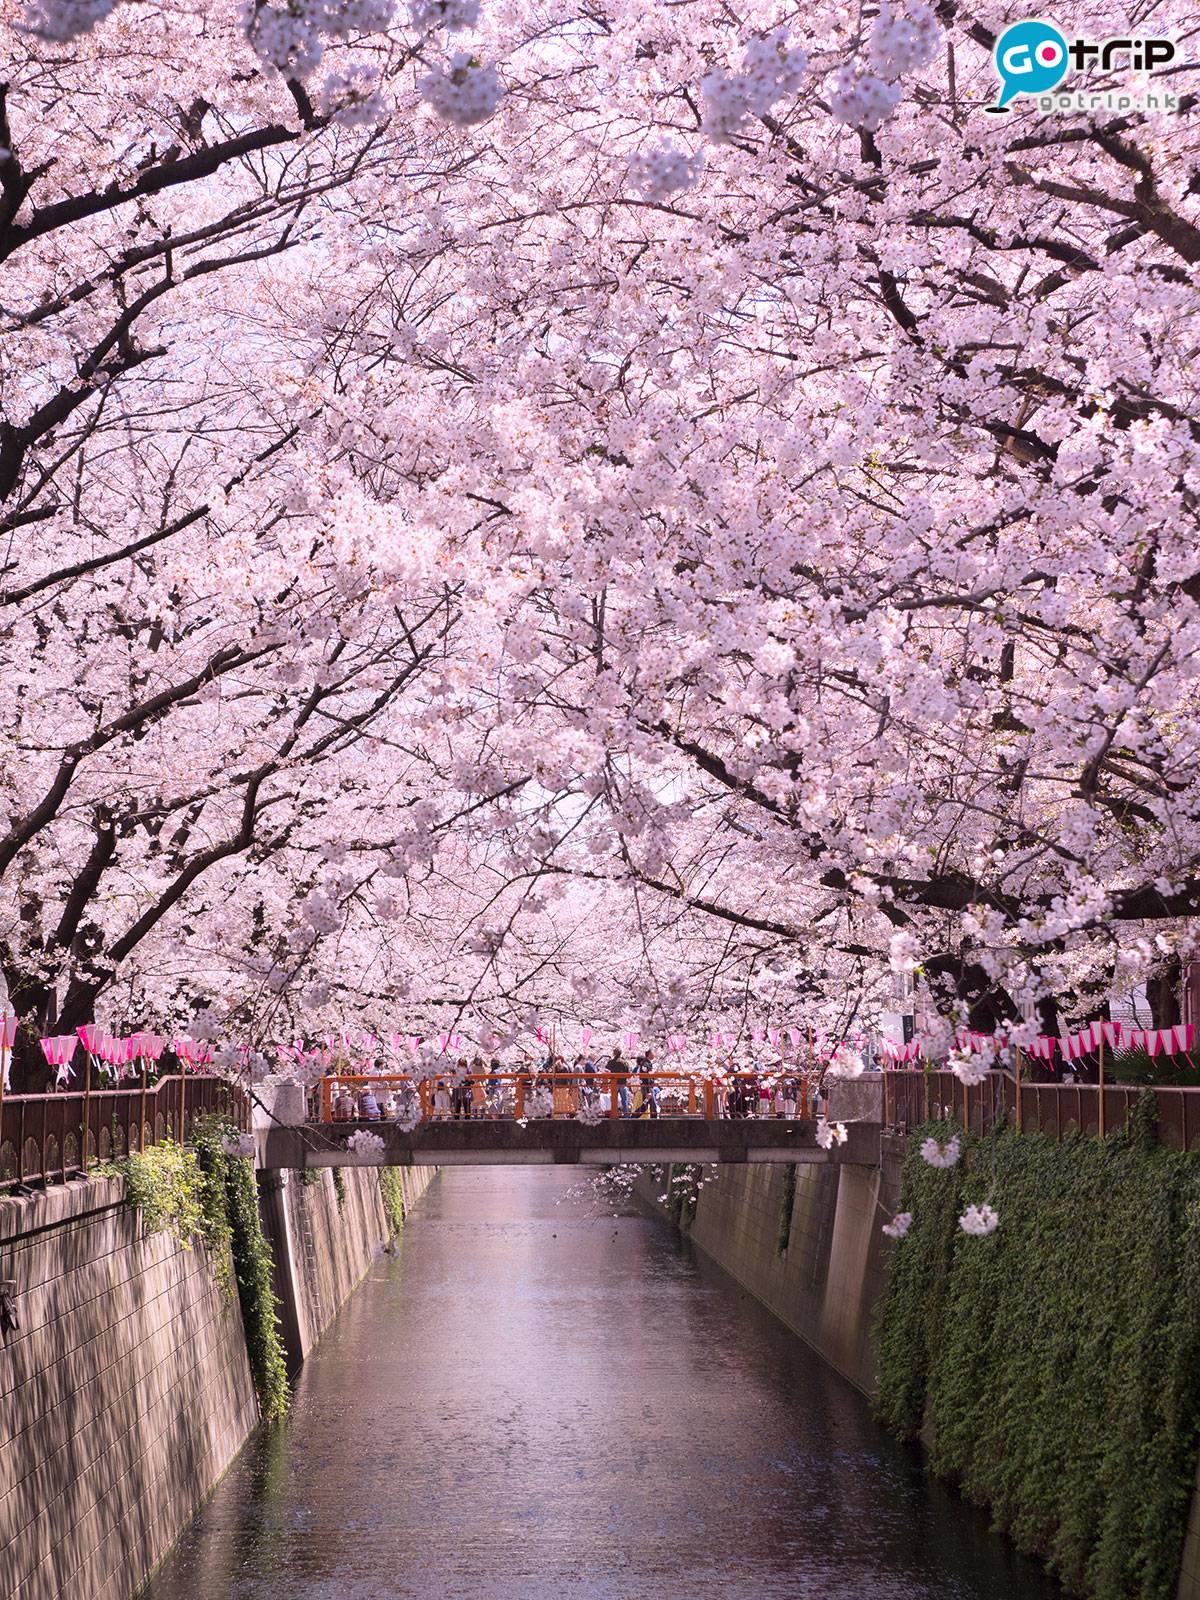 Fly！旅遊天書 目黑川4公里長的河岸兩旁，種了8百棵「染井吉野」櫻花樹，開得澎湃的櫻花為目黑川染上一抹浪漫的粉紅色。